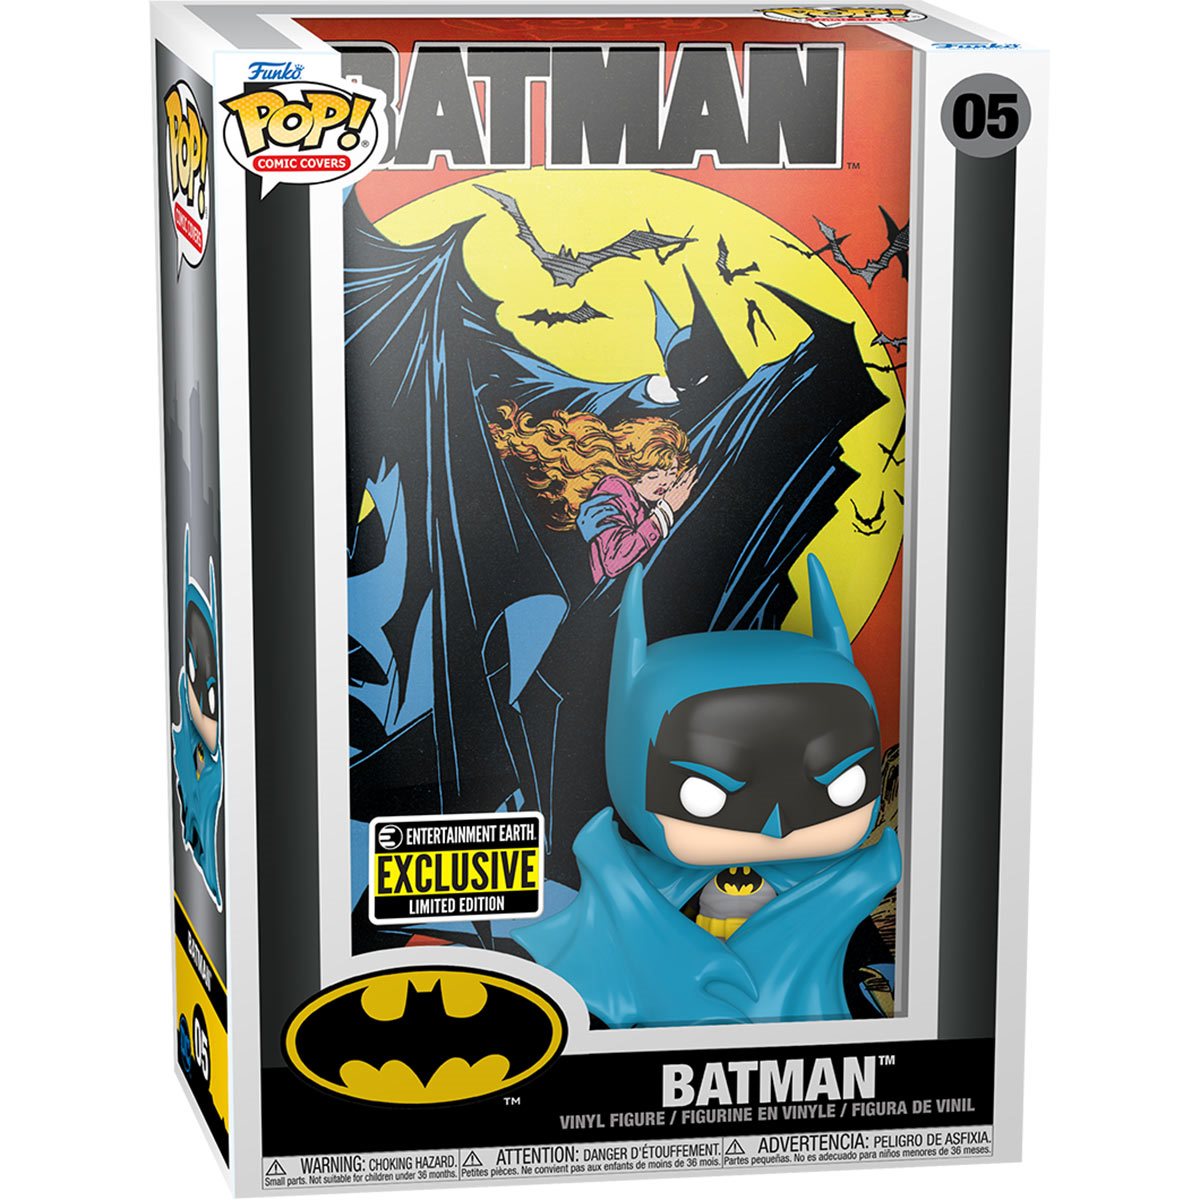 Batman 05 EE Exclusive - Funko Pop! Comic Covers